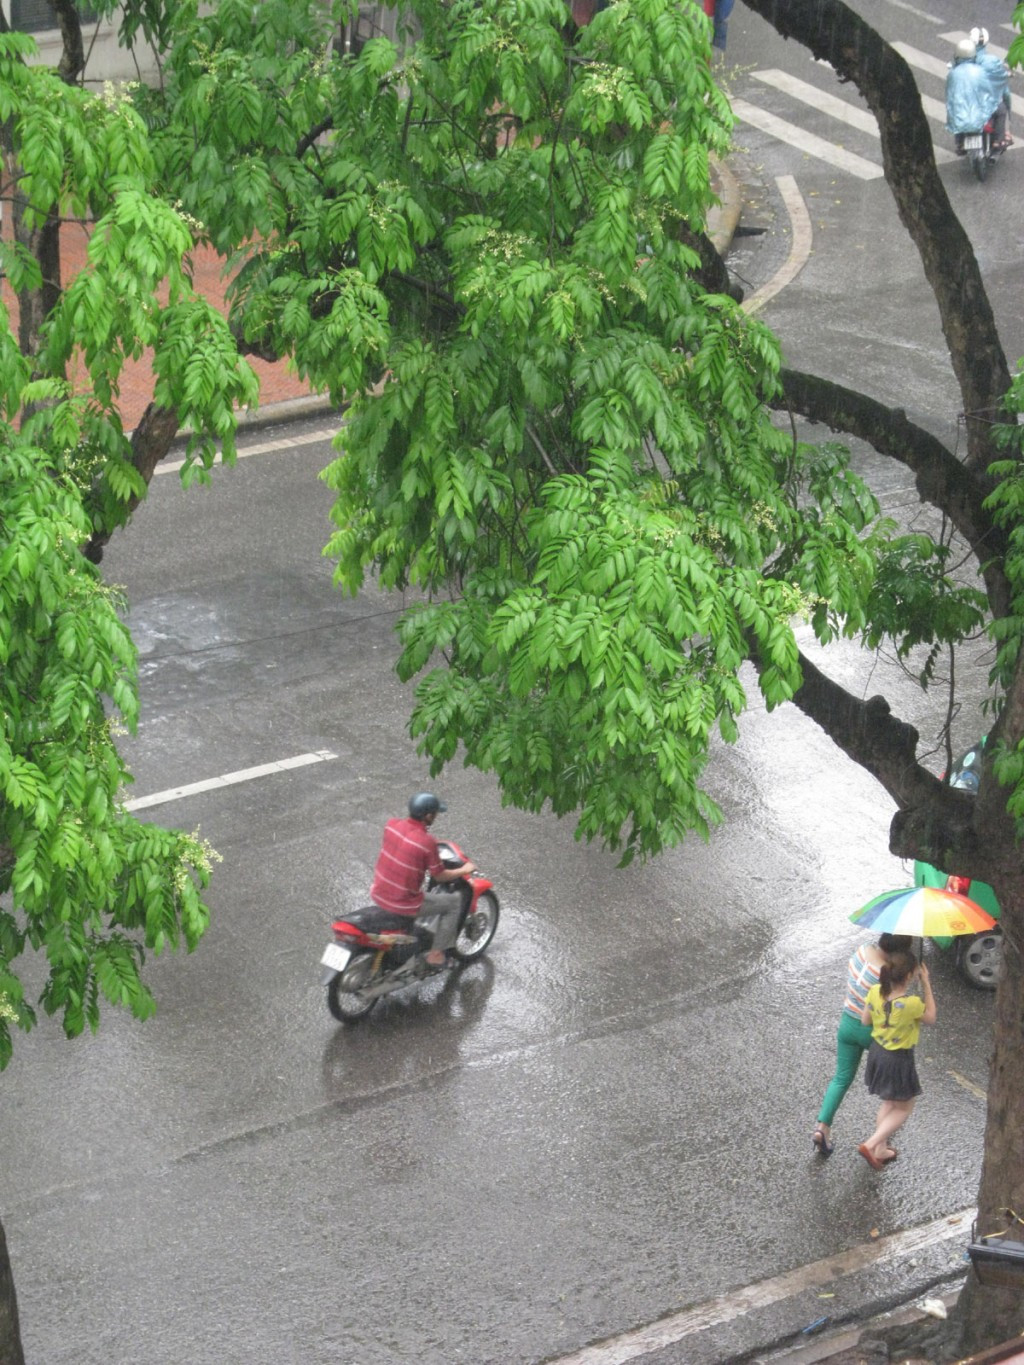 Sau cơn mưa đường phố sạch tinh, cây cối xanh mỡ màng